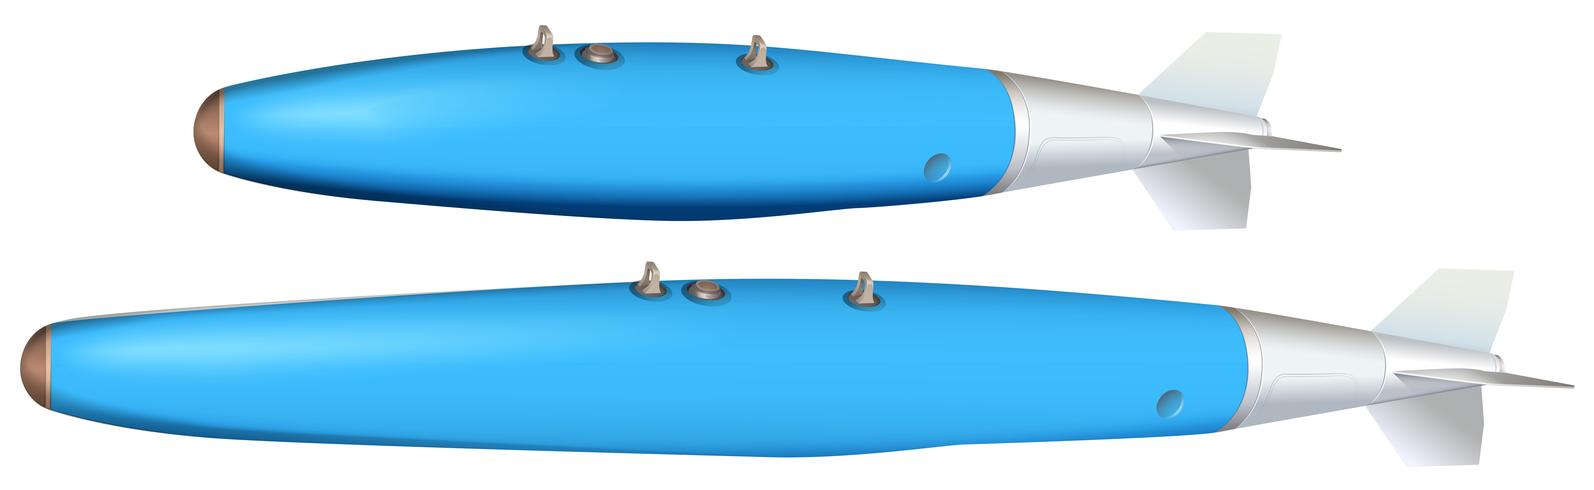 Twee ontwerpen van bommen in blauw vector